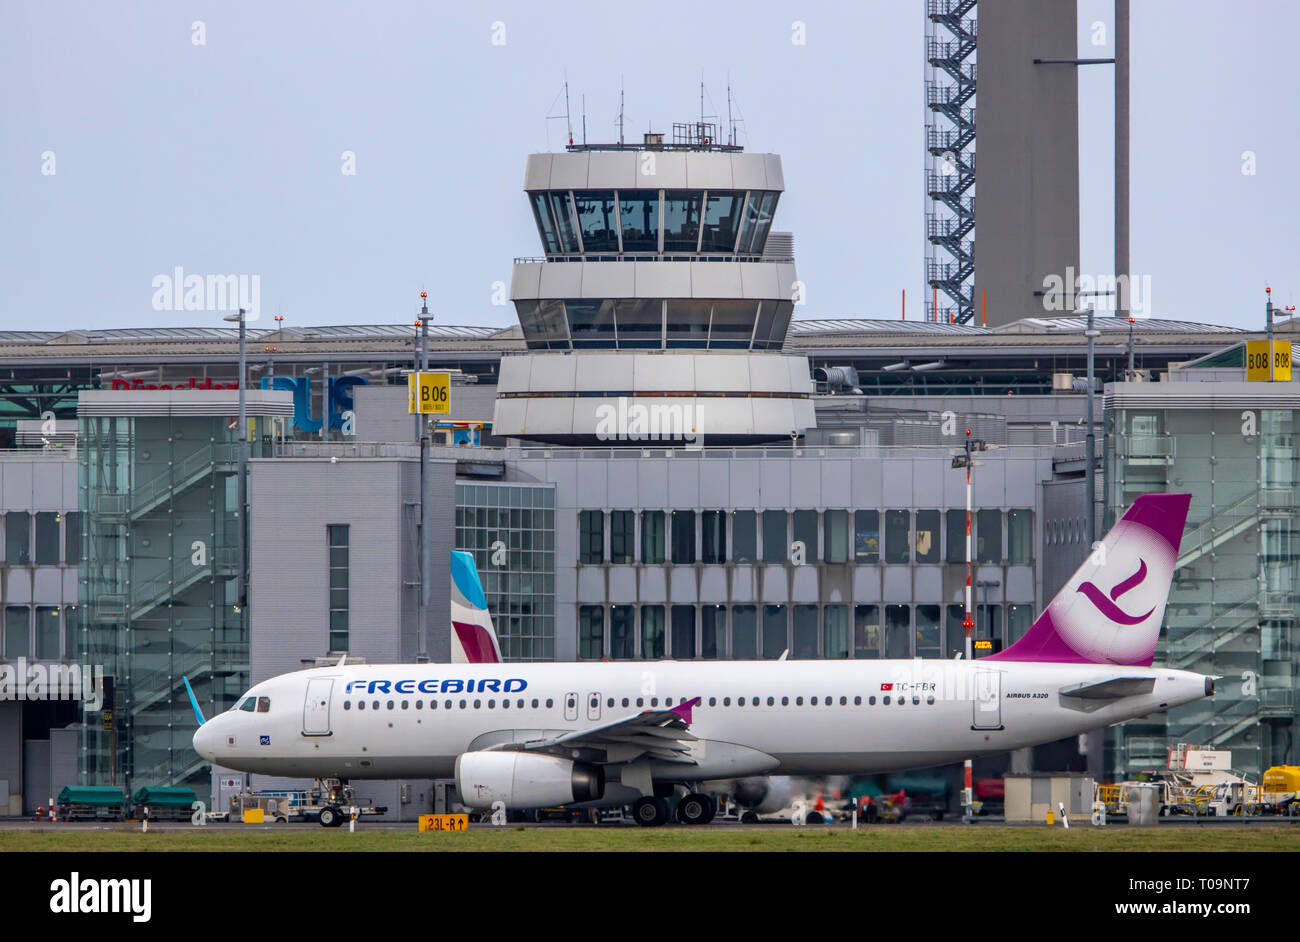 L'aeroporto internazionale di Düsseldorf, DUS, Freebird, Turchia, del controllo del traffico aereo Tower, Foto Stock